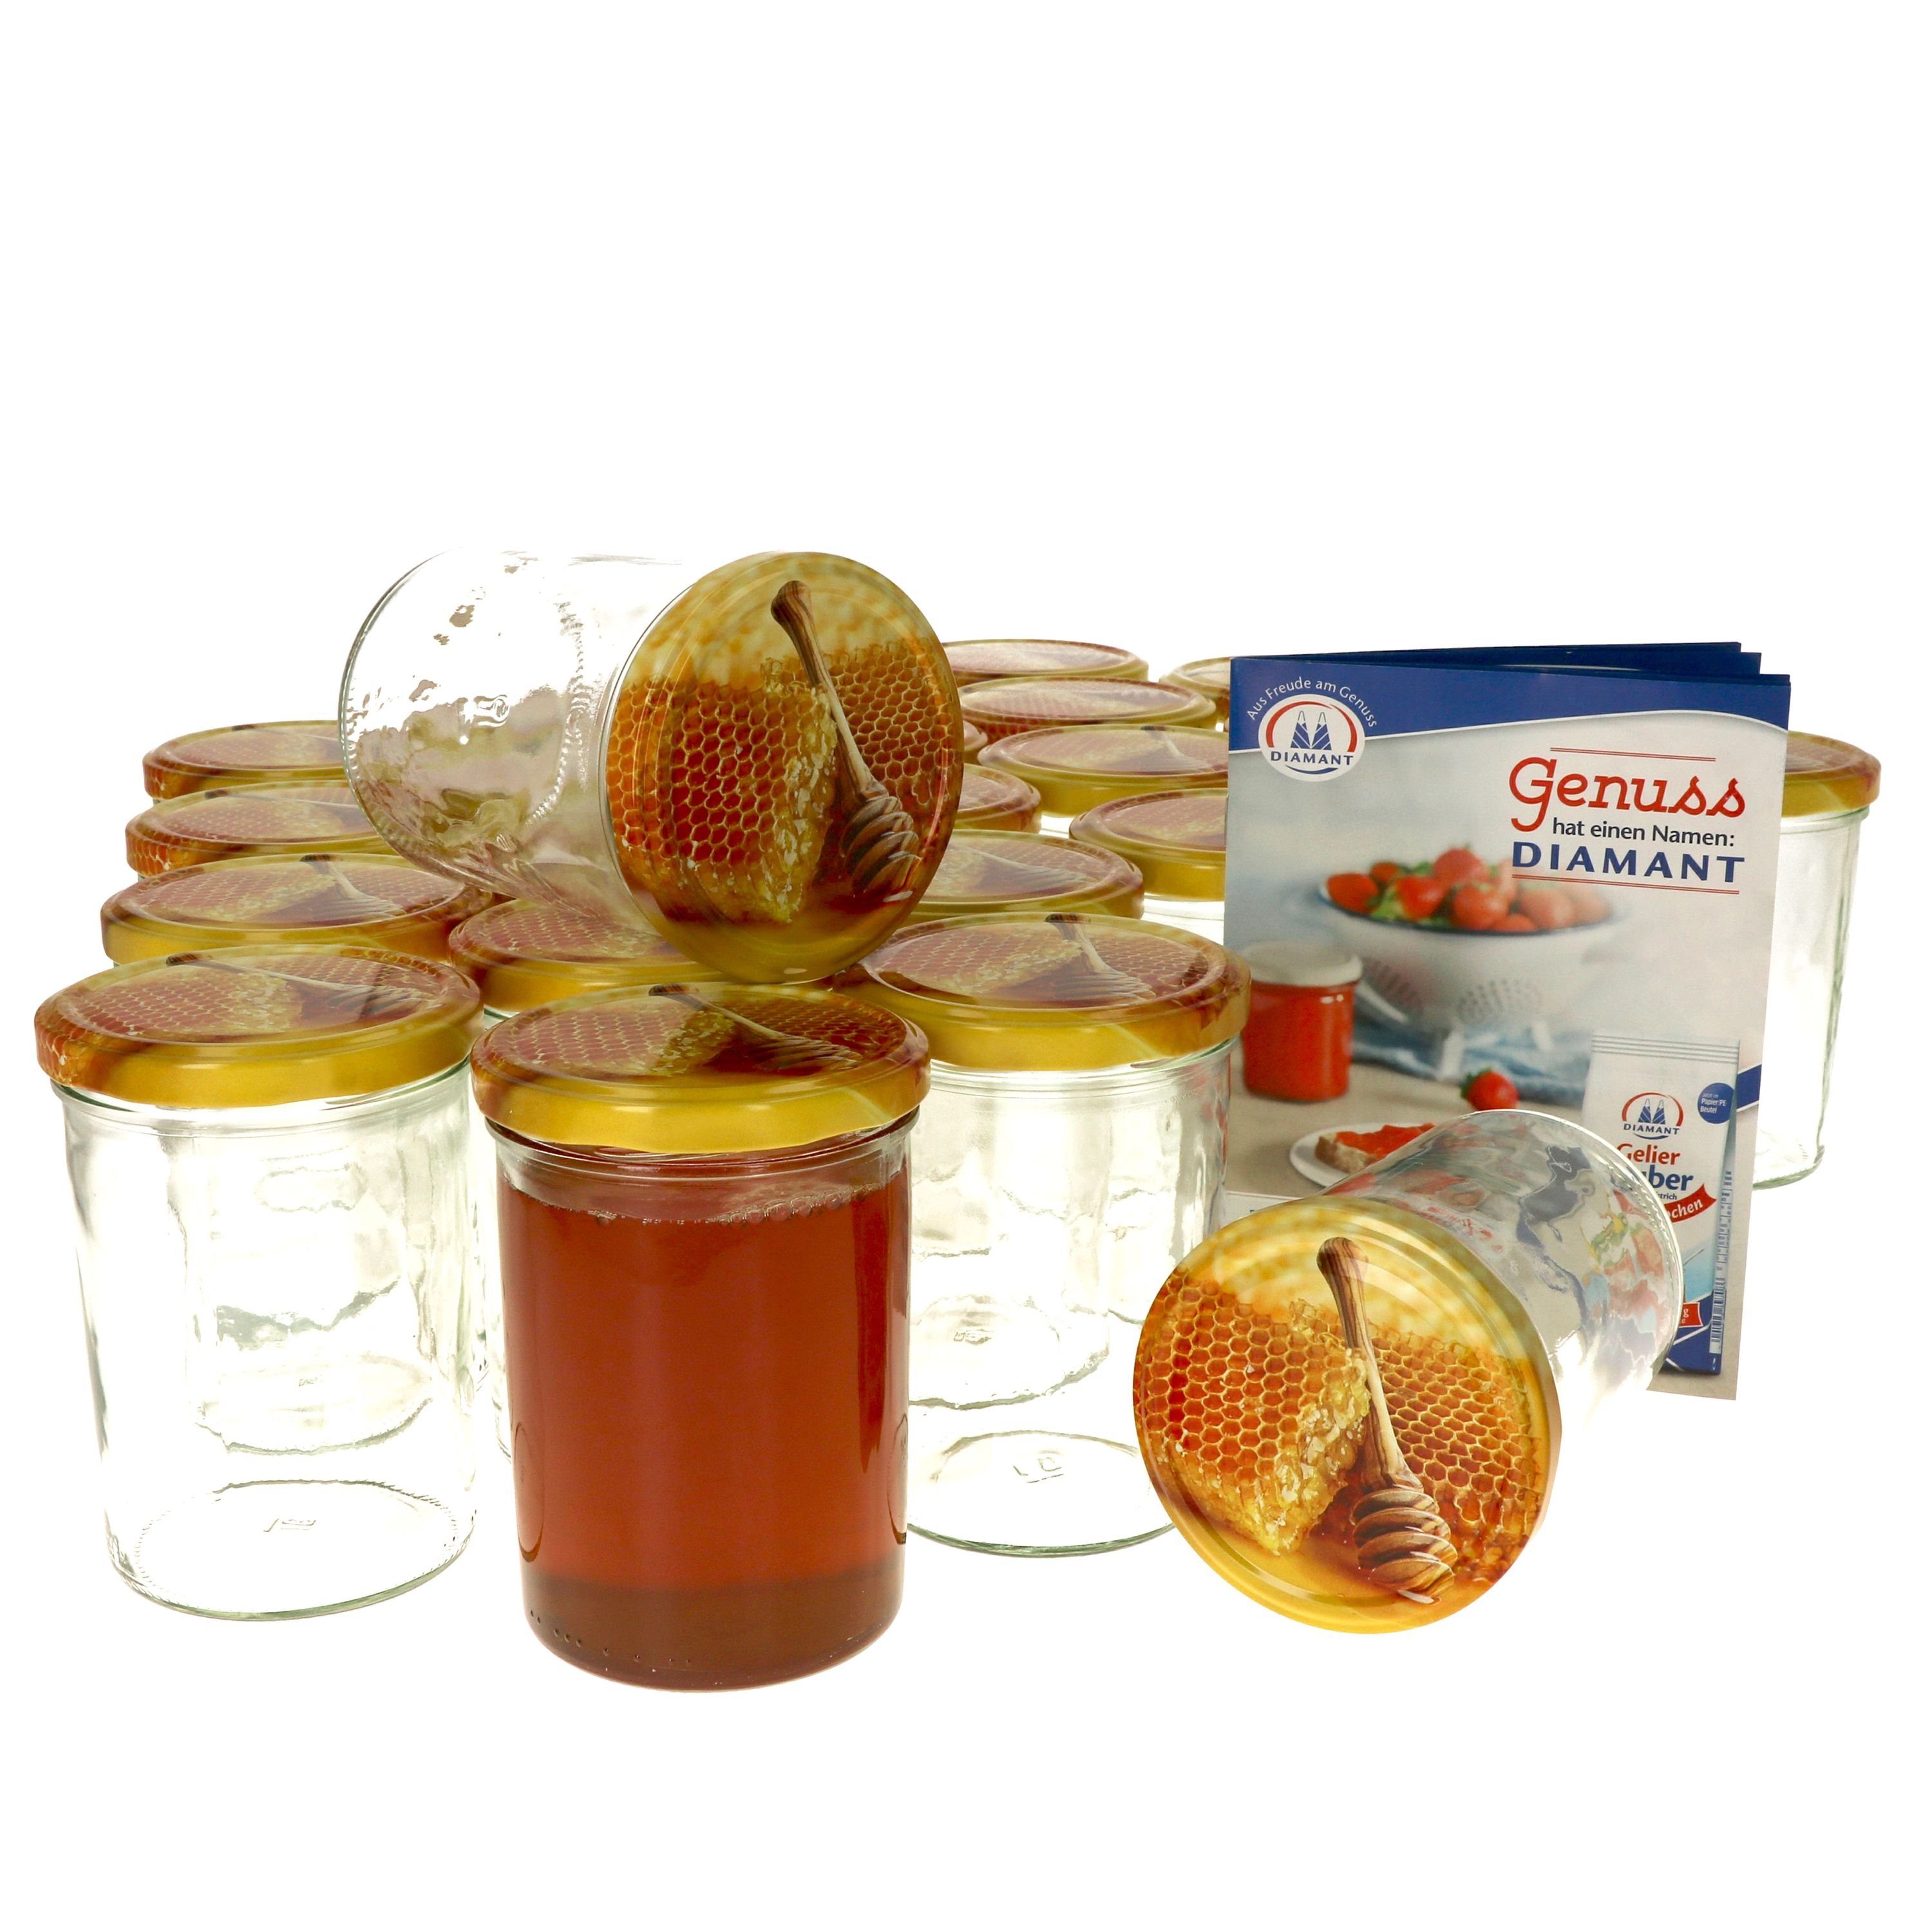 MamboCat Einmachglas 25er Set Sturzglas 435 ml Carino To 82 Deckel mit Honigwabe, Glas